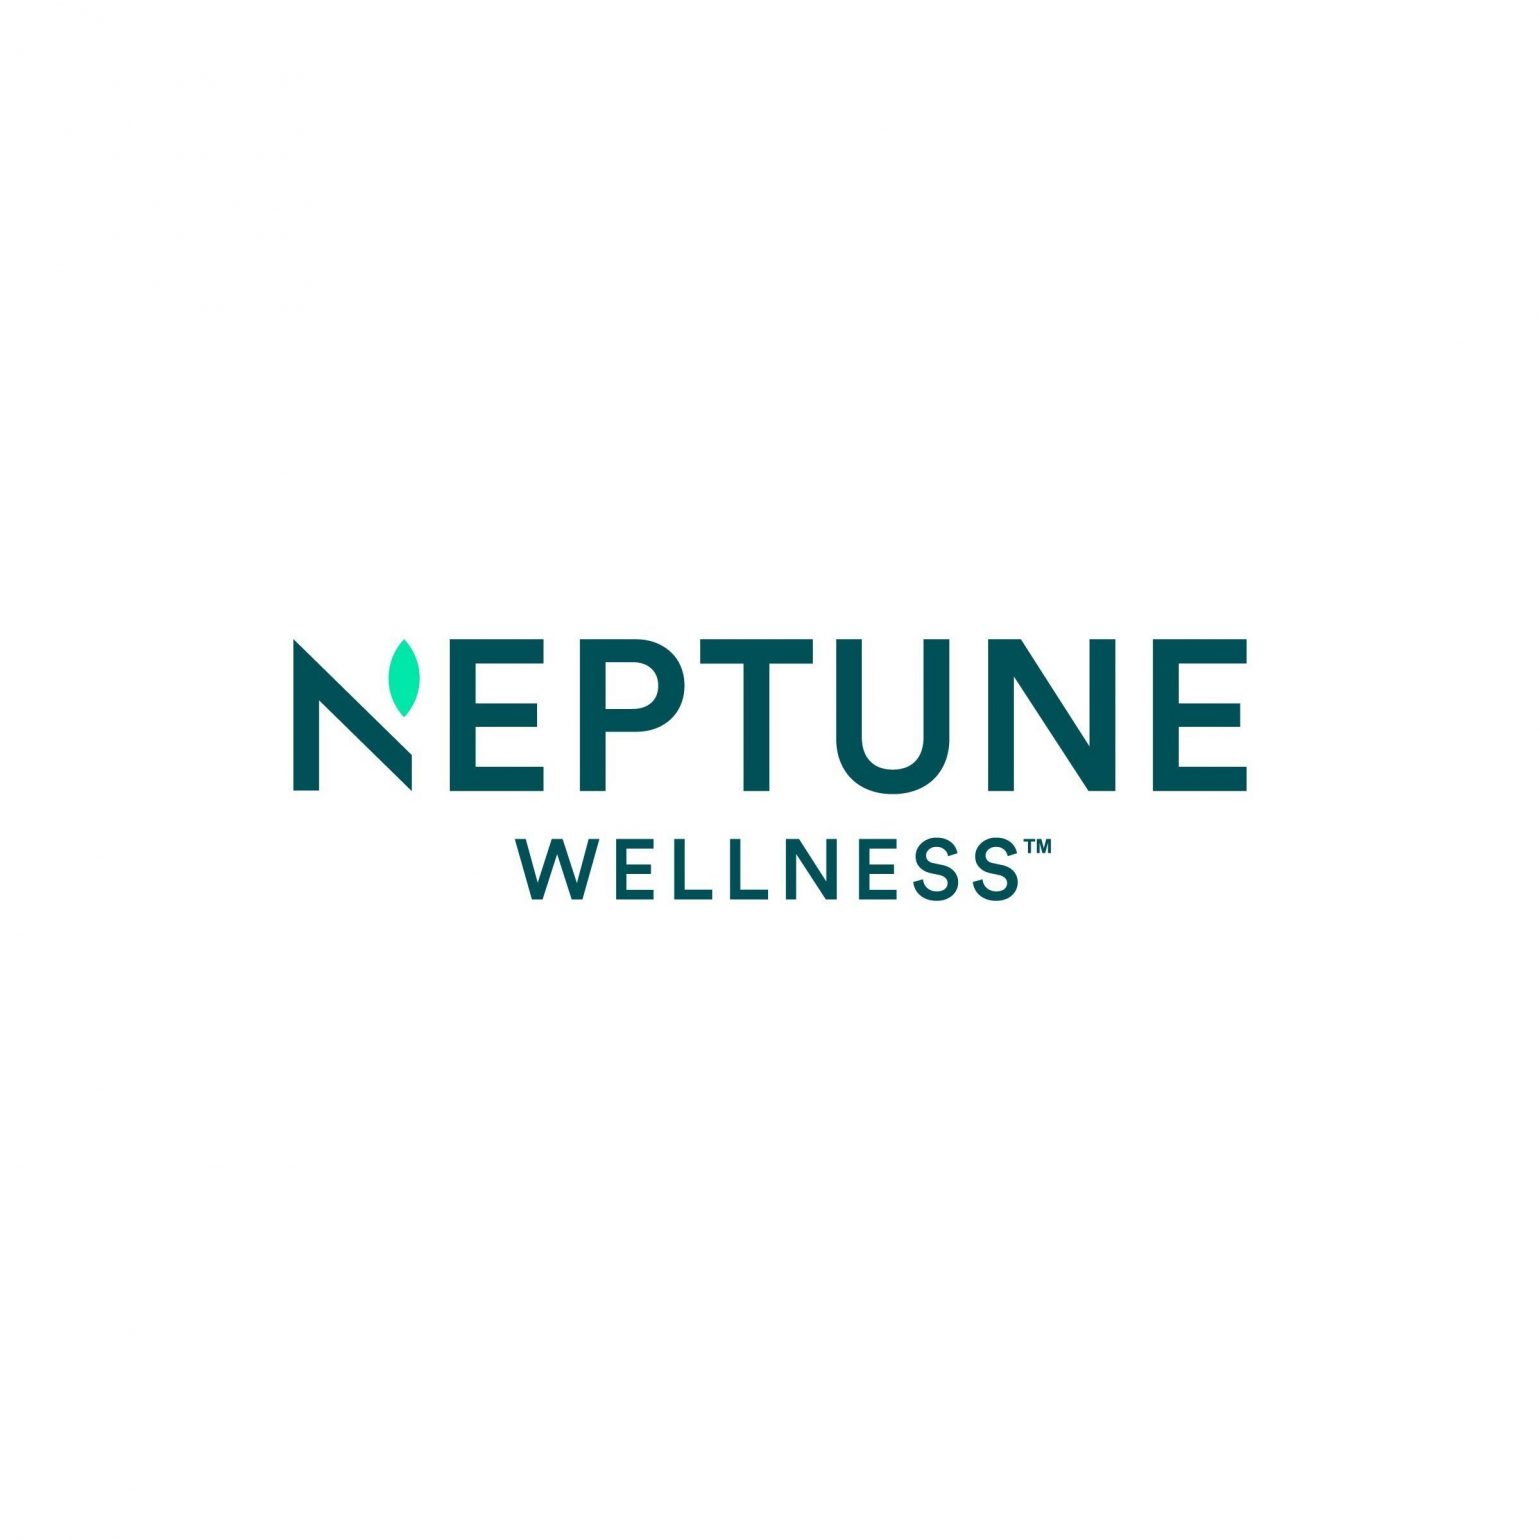 Neptune Wellness